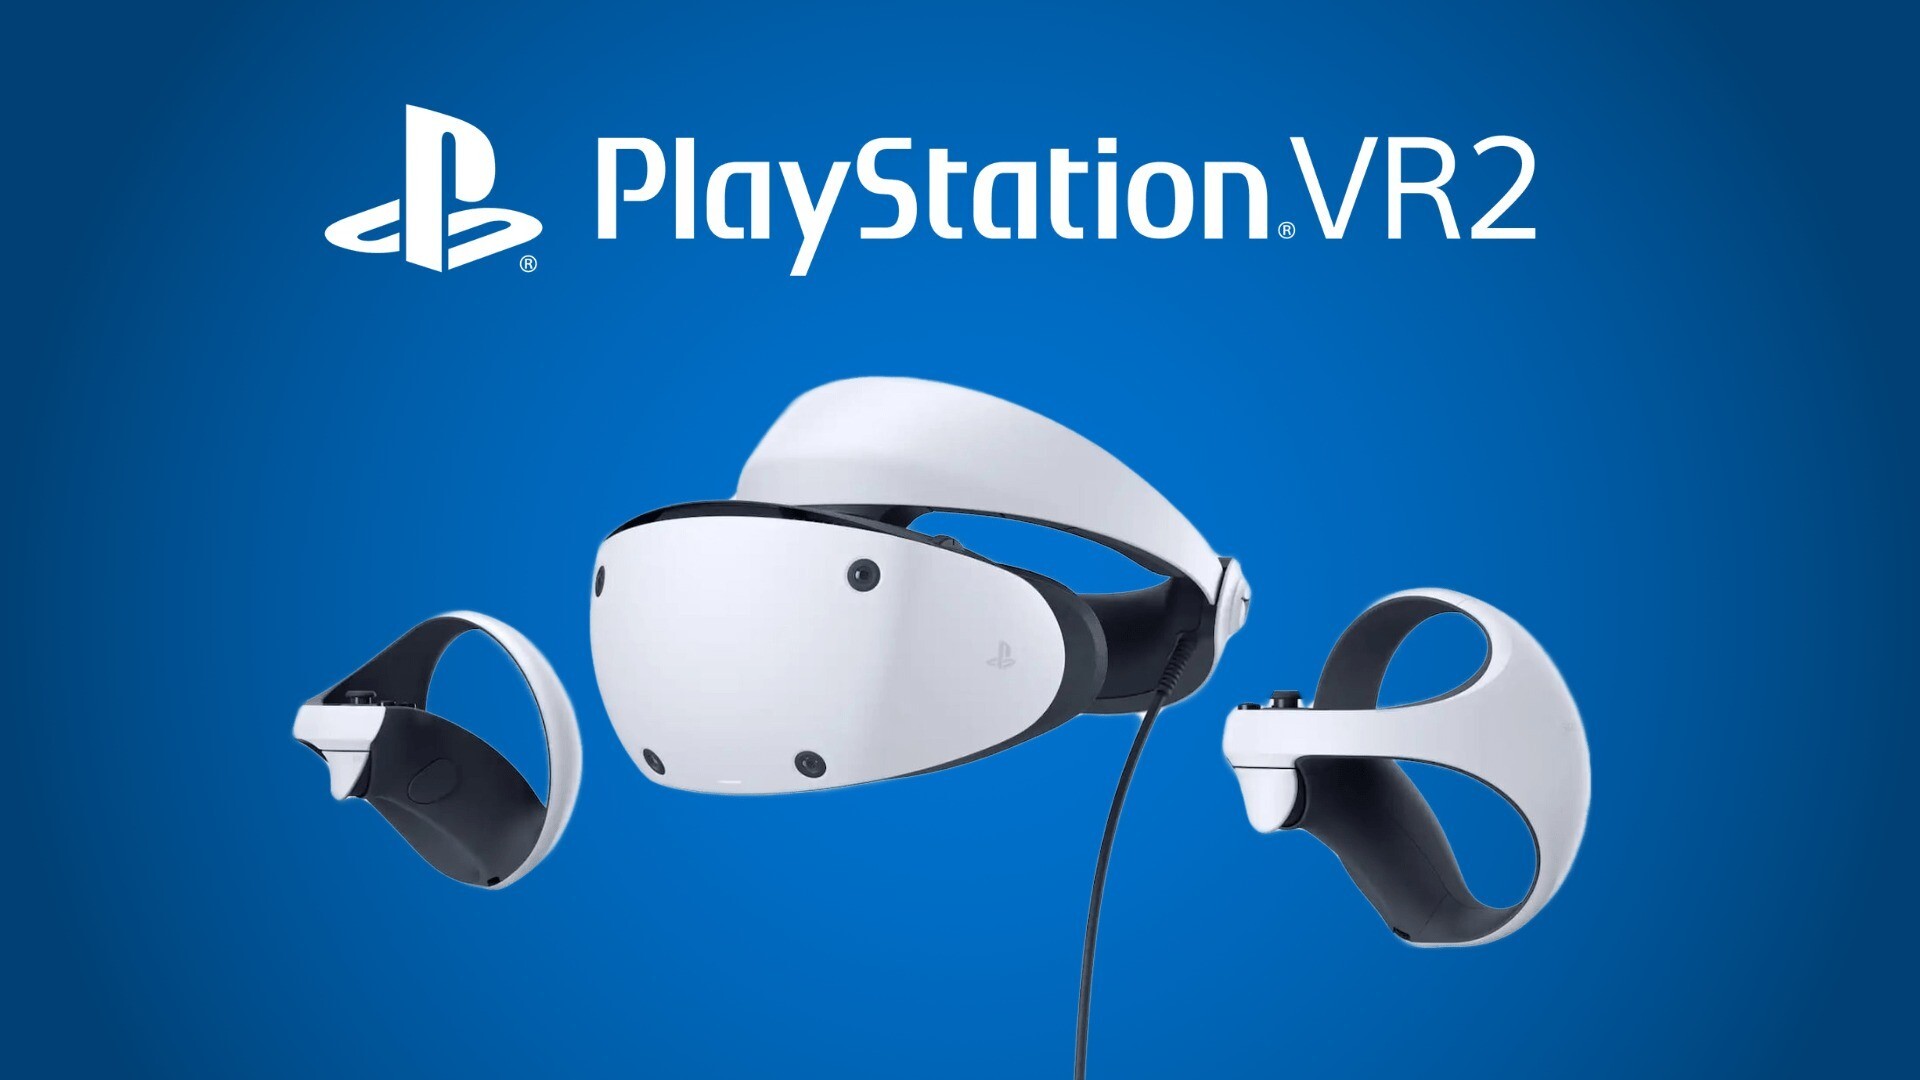 Sony revela data de lançamento do PlayStation Vr 2 (Imagem: Reprodução/ Sony)